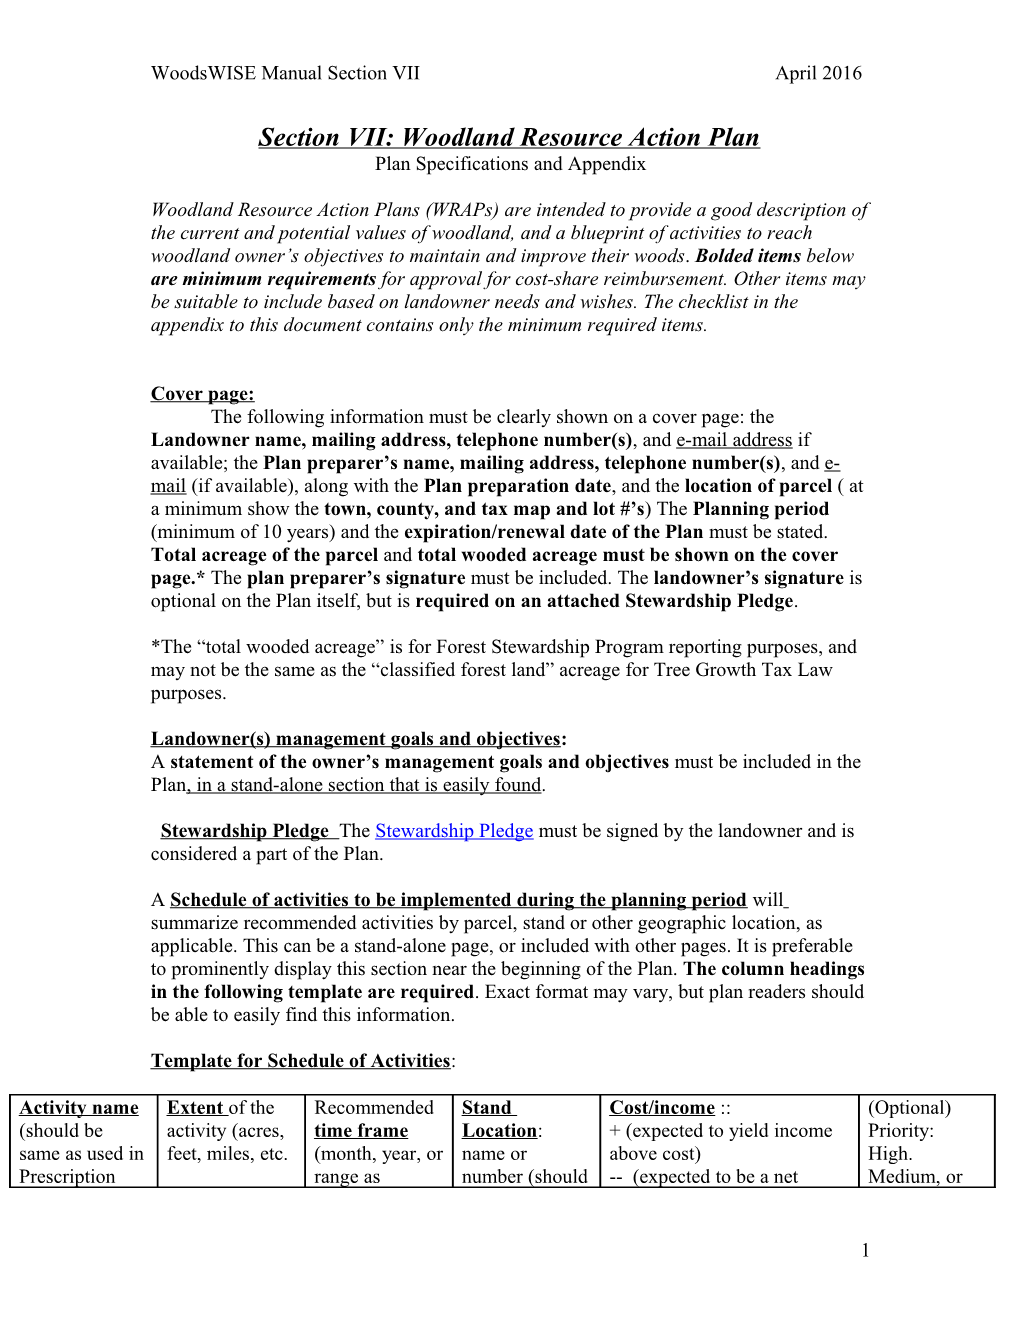 Woodlot Assessment/FSA Checklist